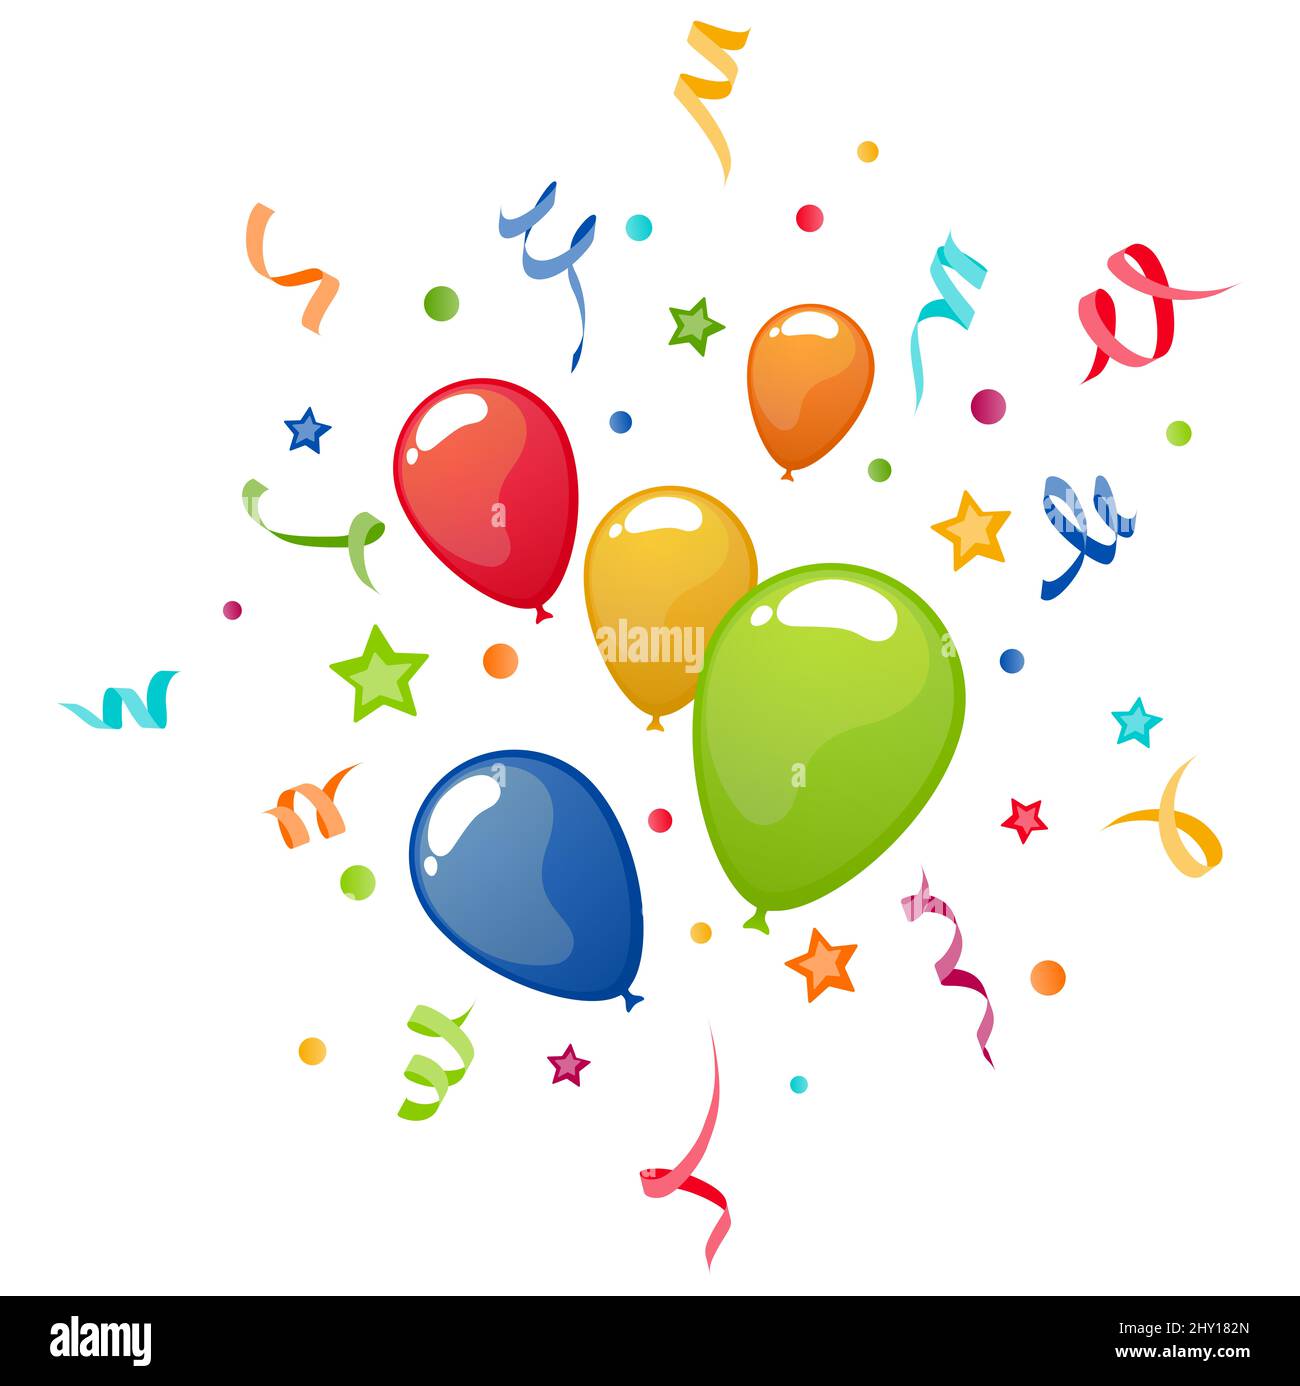 eps Vektor Illustration von verschiedenen farbigen fliegenden Ballons, Luftschlangen, Konfetti und Sterne explodieren, Verwendung für Karneval oder Kinderparty Werbung Stockfoto